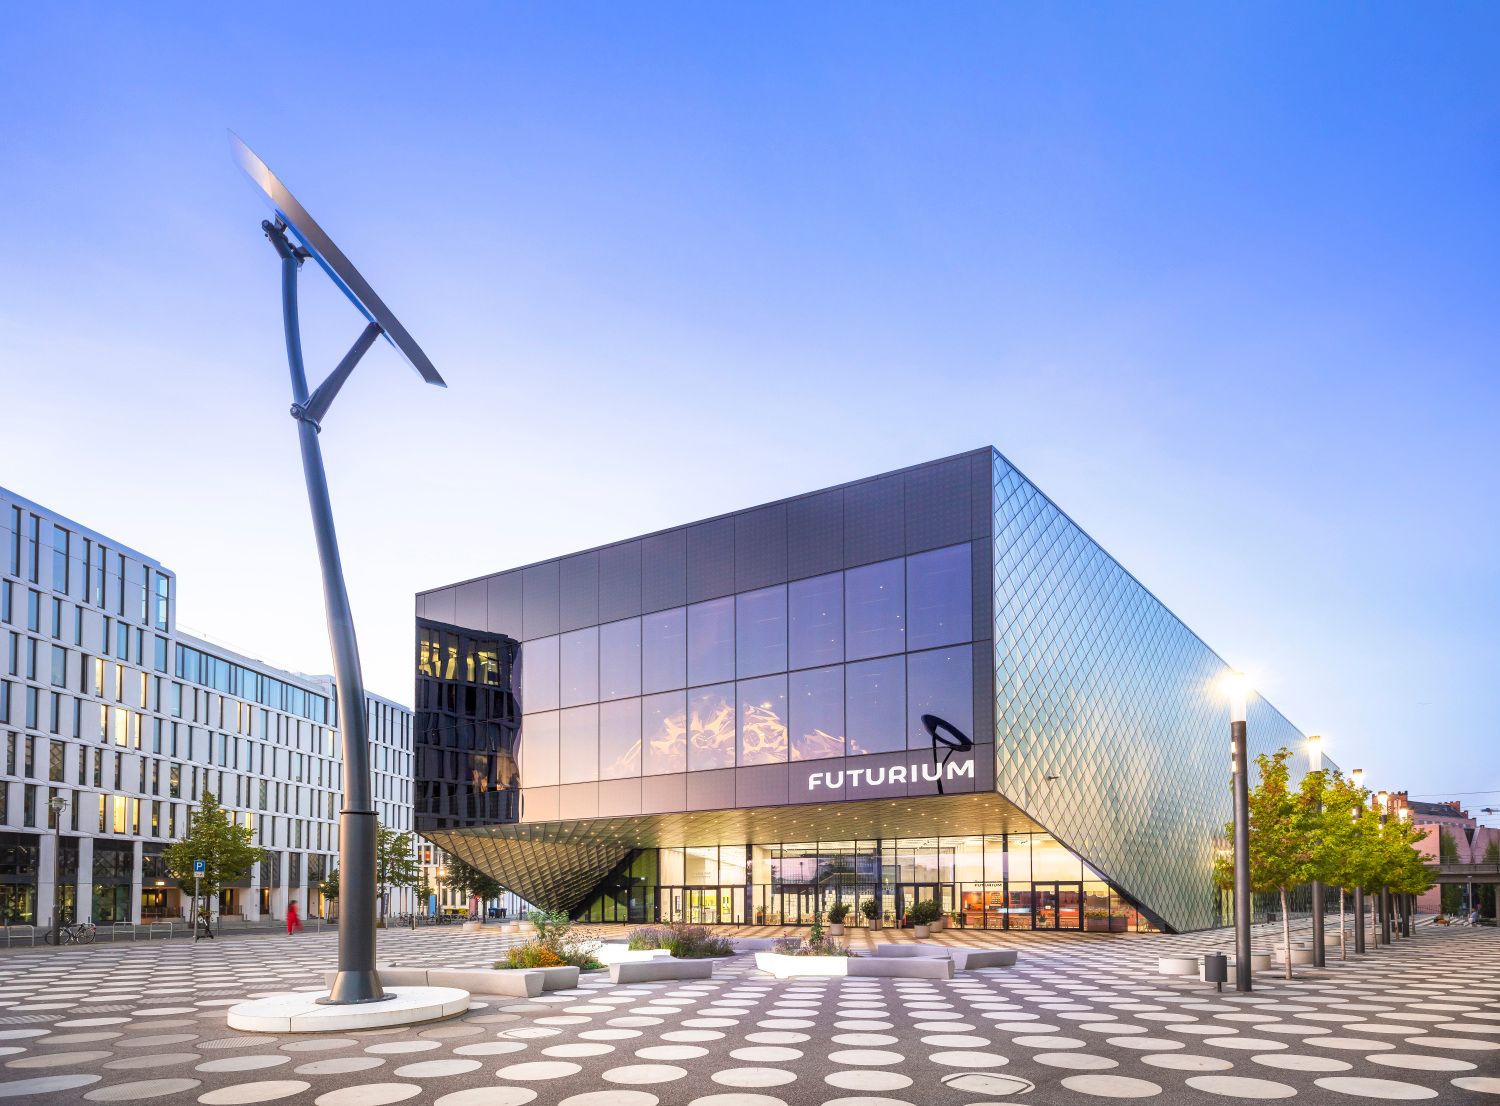 Das Futurium wurde nach Plänen des Berliner Architekten-Büros Richter-Musikowski errichtet. Das fünfseitige Bauwerk aus Beton, Glas und Stahl liegt am Spreebogen neben dem Hauptbahnhof